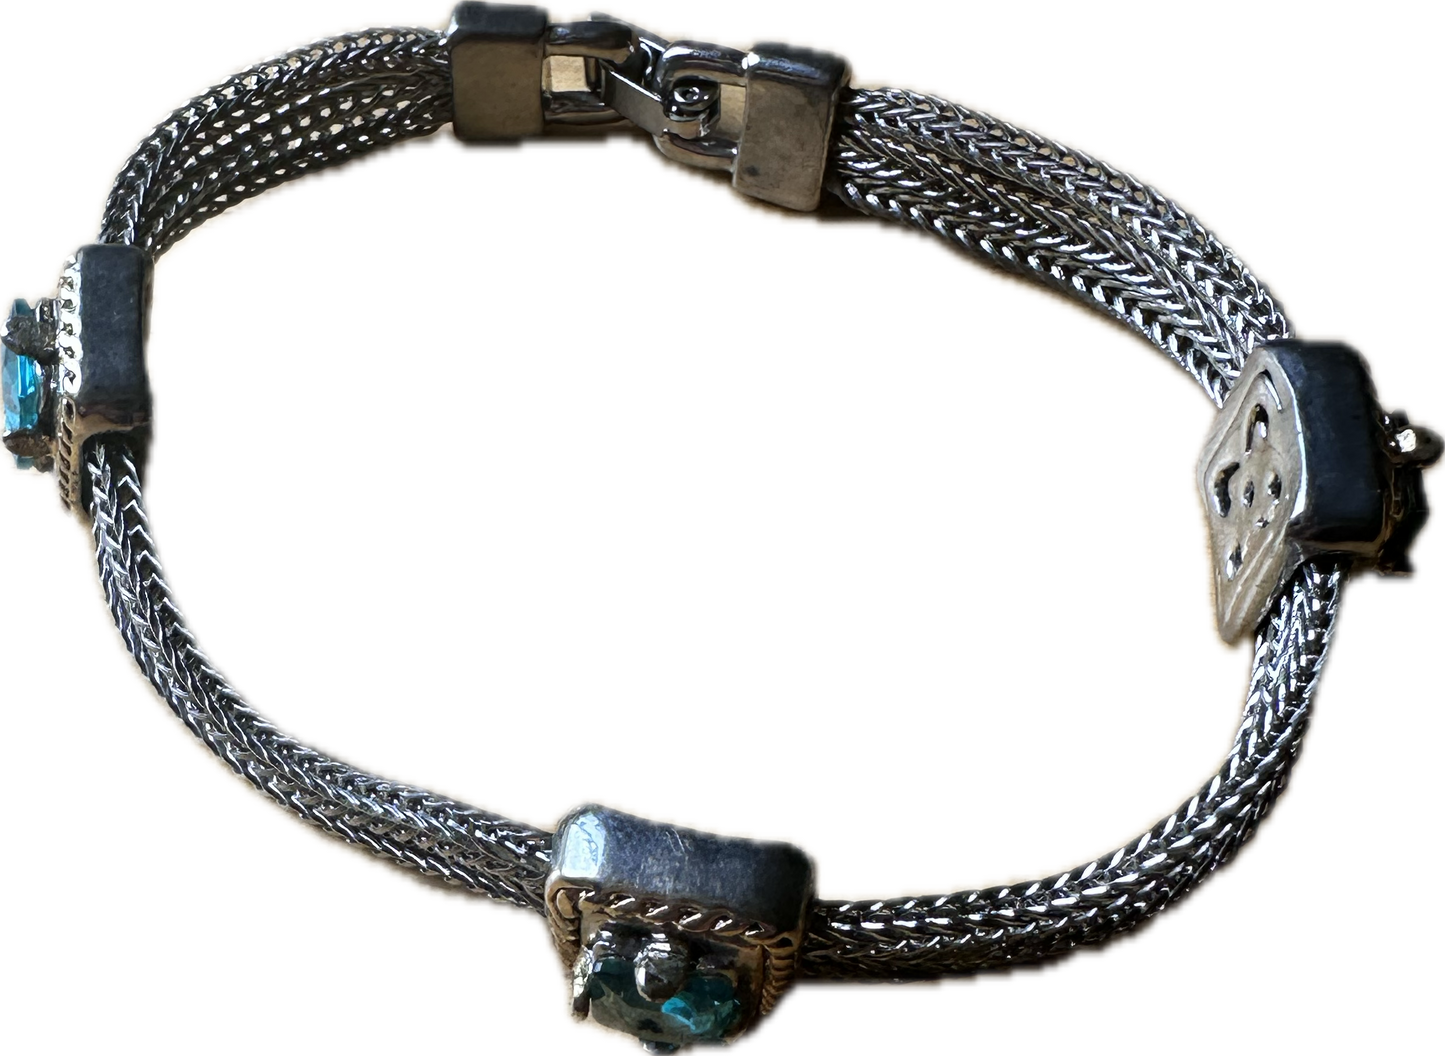 BONES: Dr. Brennan's Bracelet